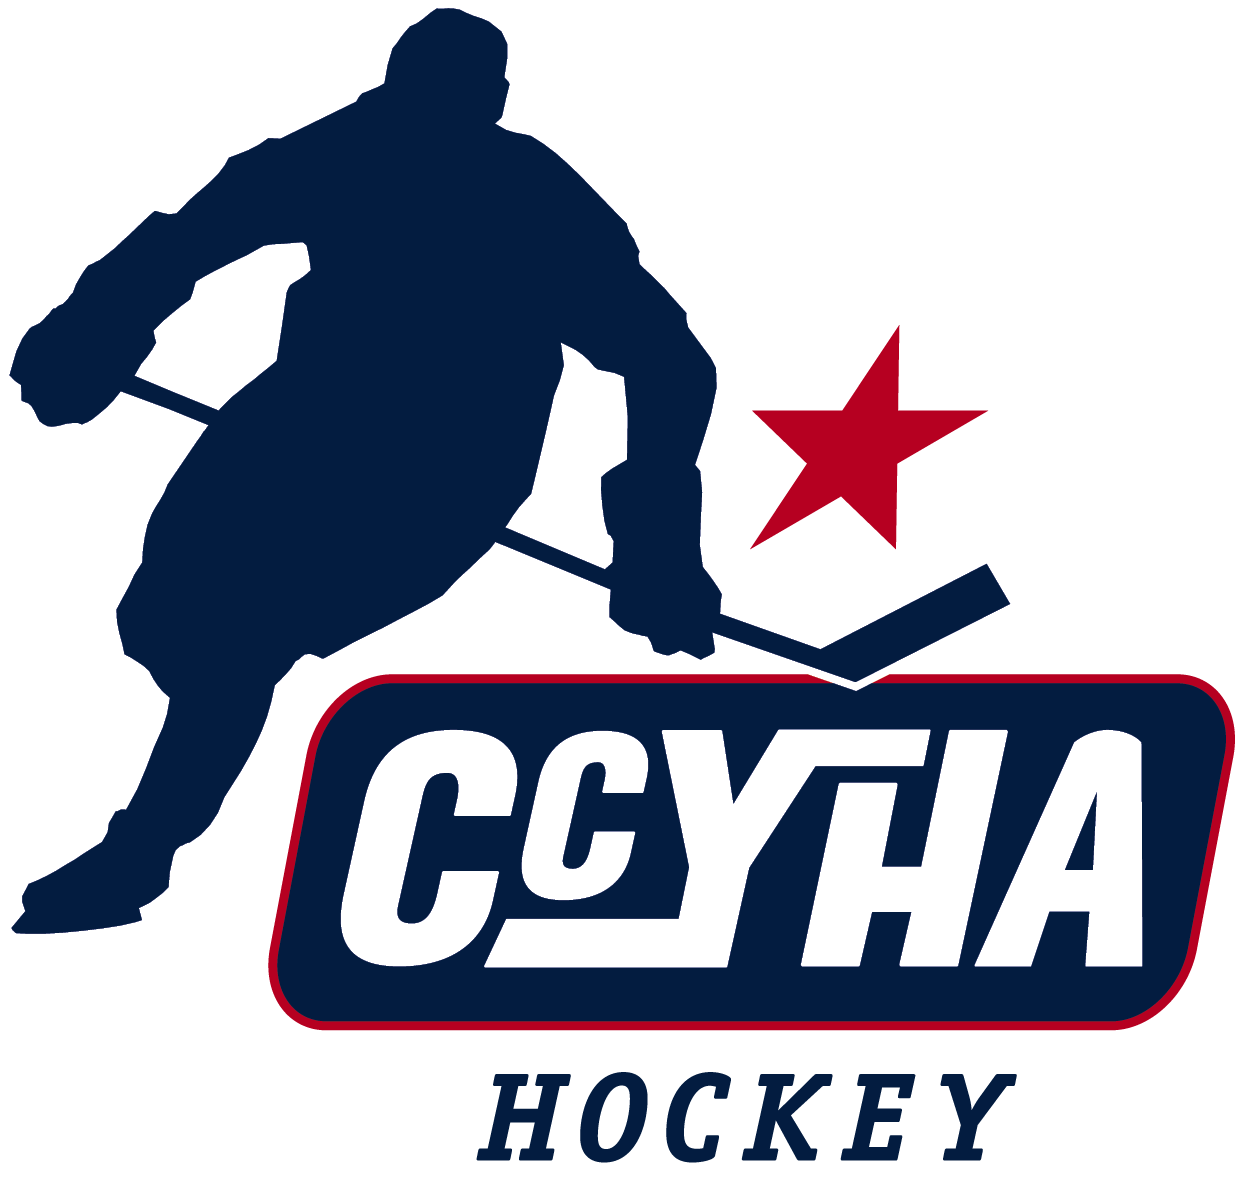 hockey clipart hockey coach